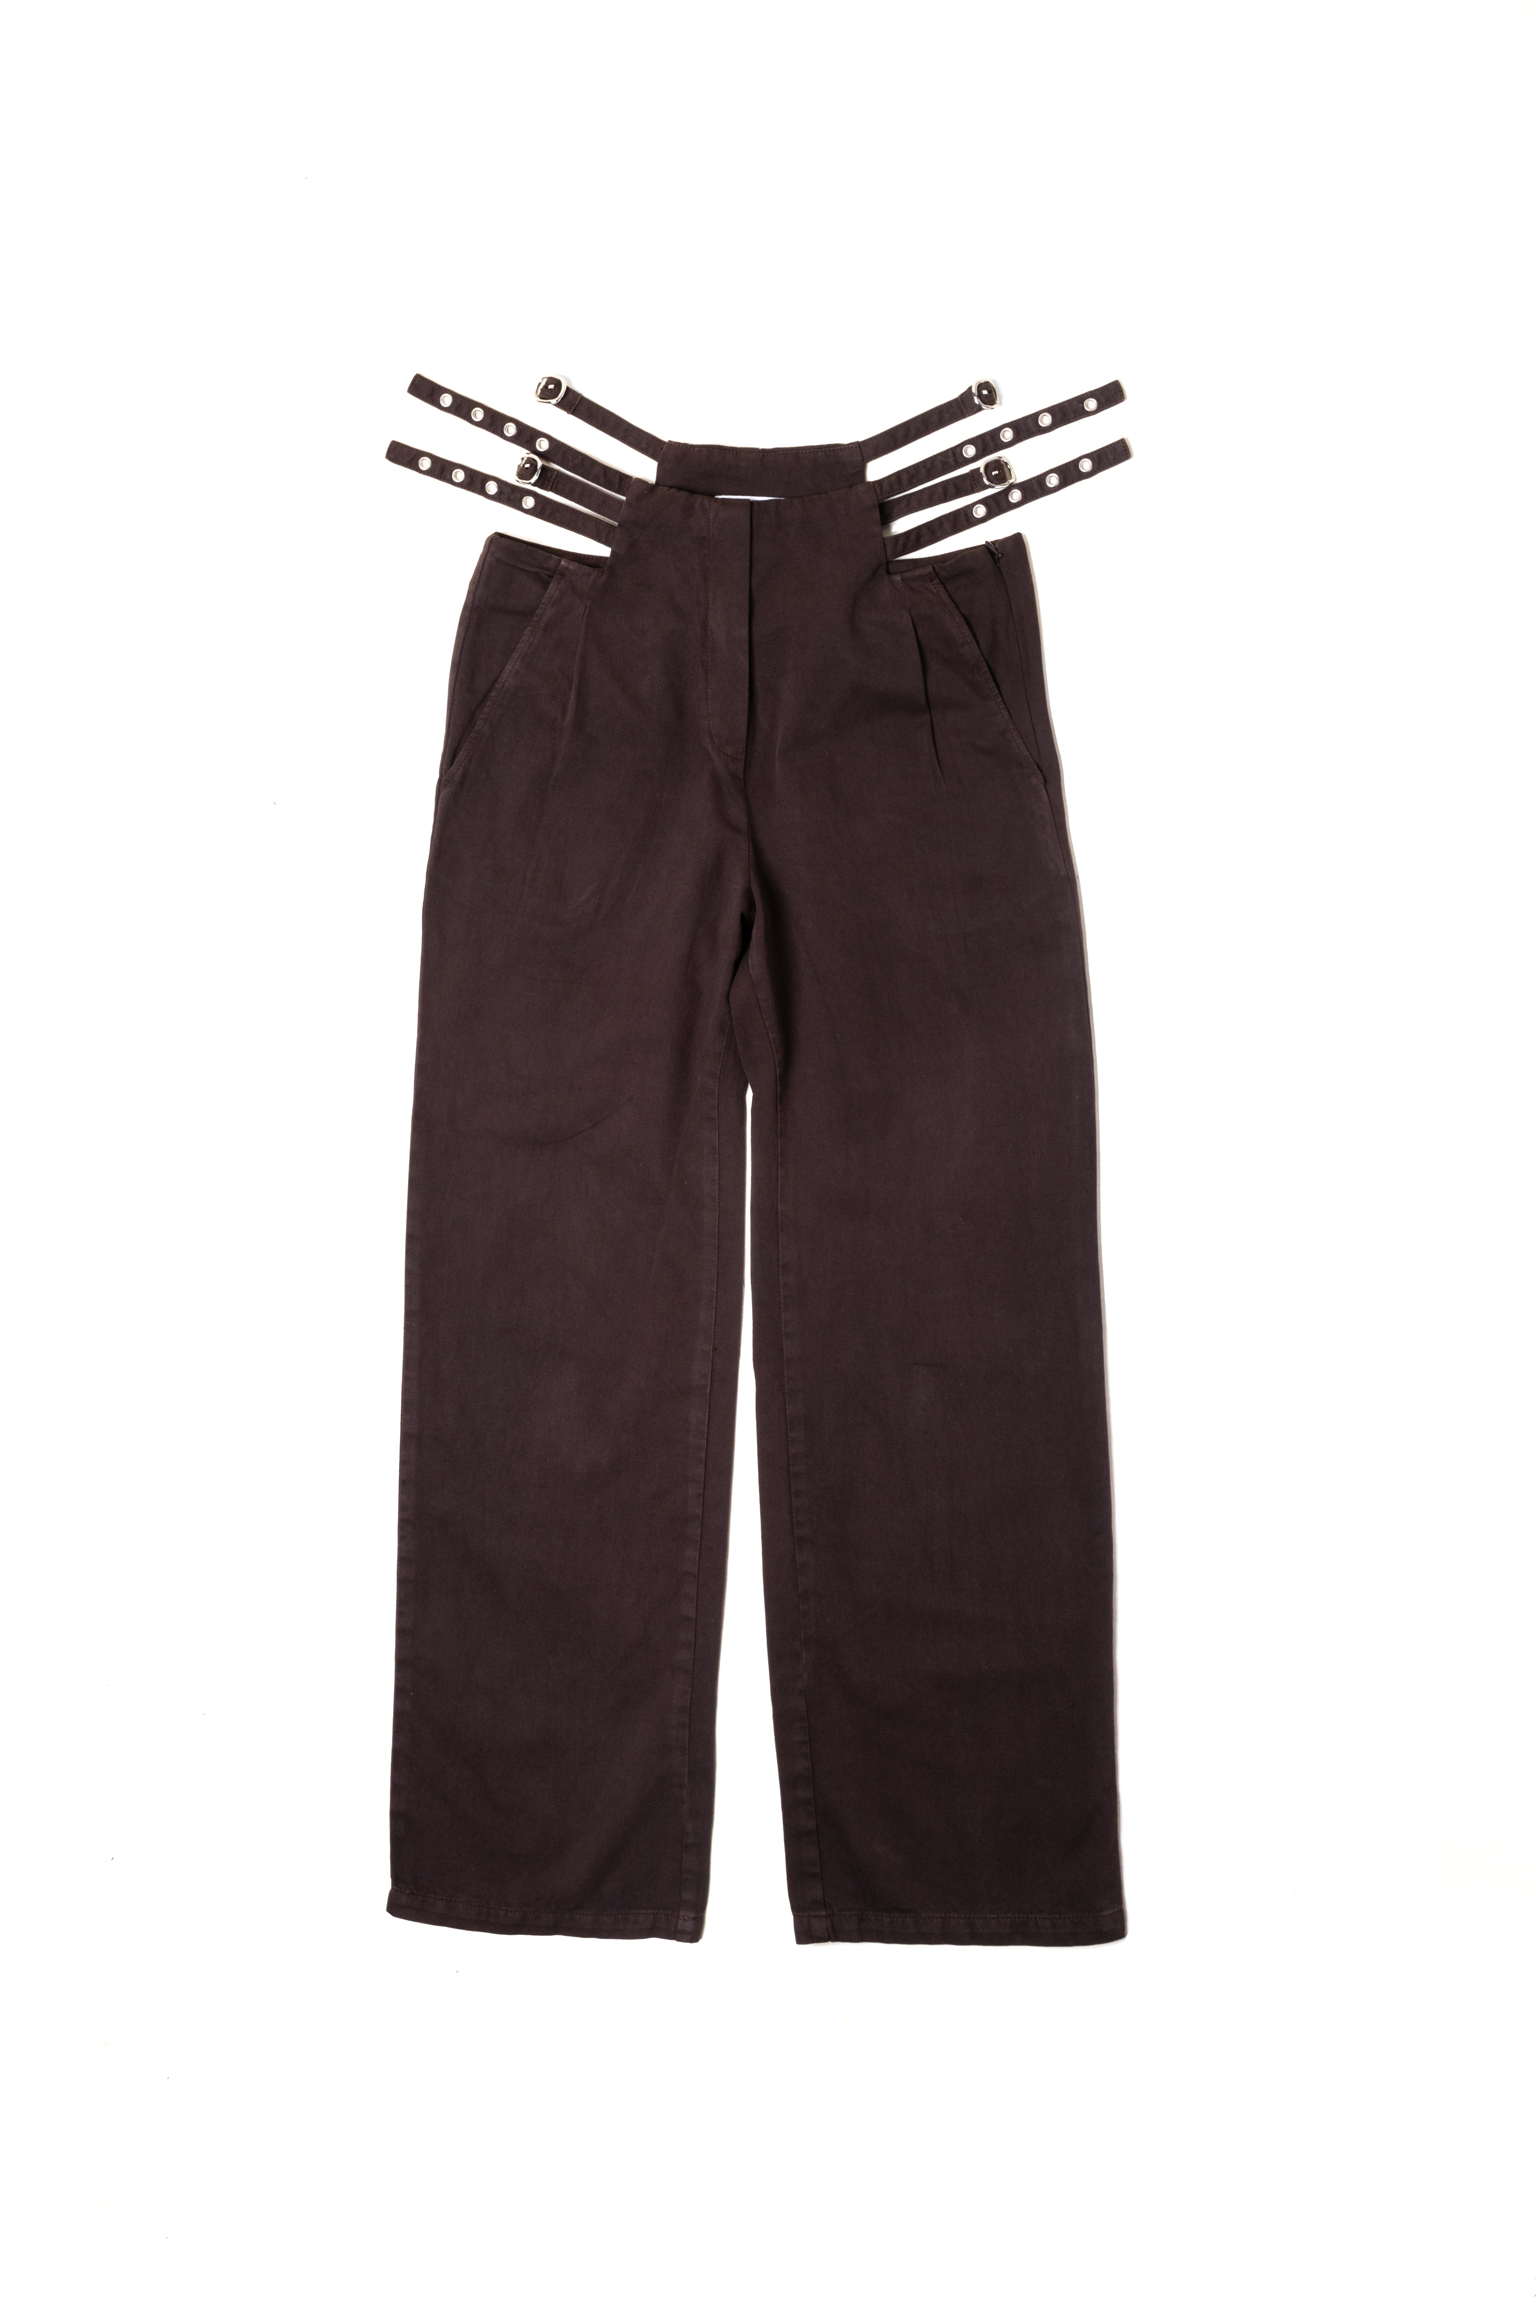 貴重 【Black】FARAH TwoTuck Side Adjustable Pants www.sanklecha.in